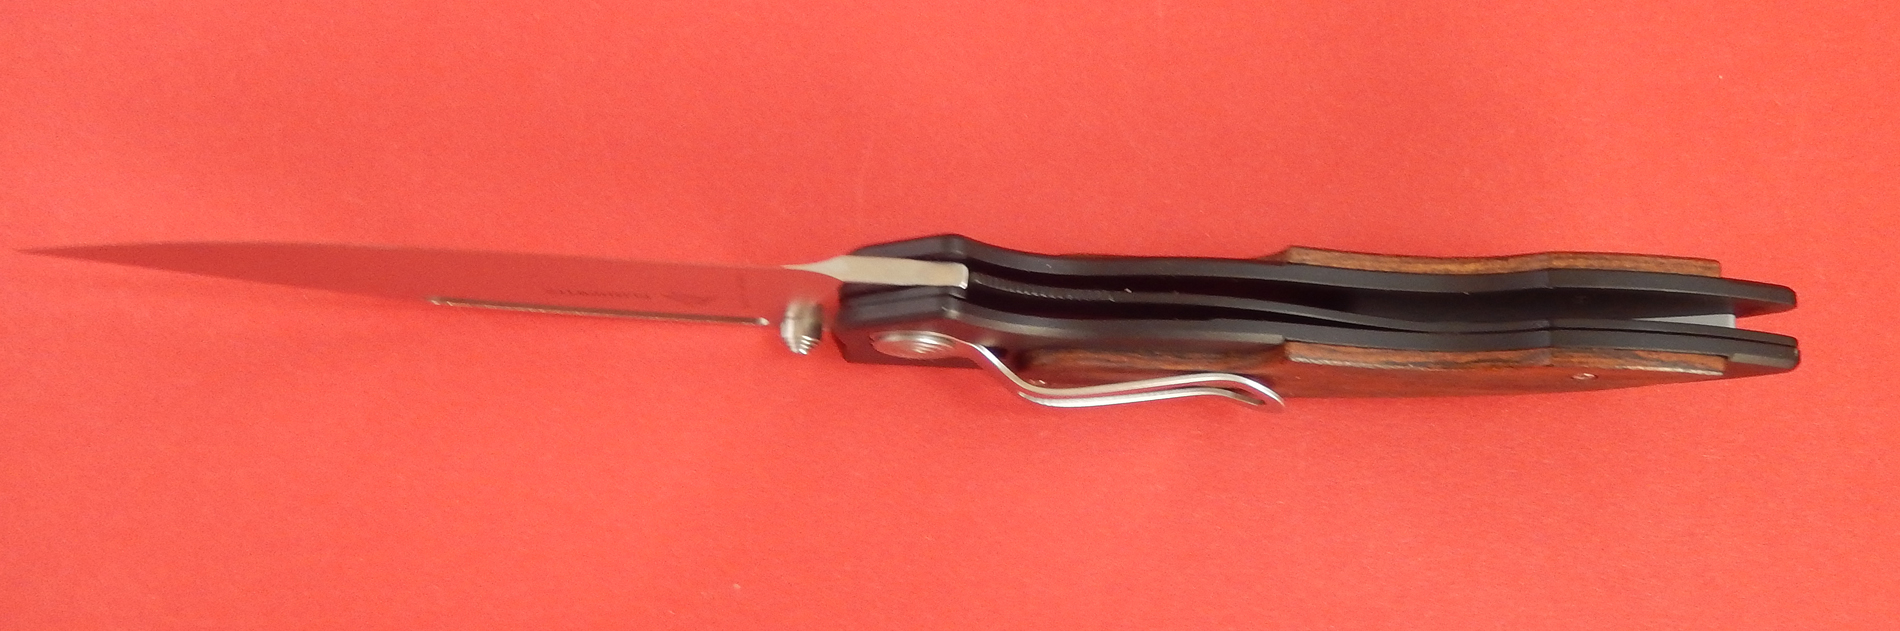 Eickhorn Einhandmesser Taschenmesser 10,5 cm Quality Made in SG bei ISS